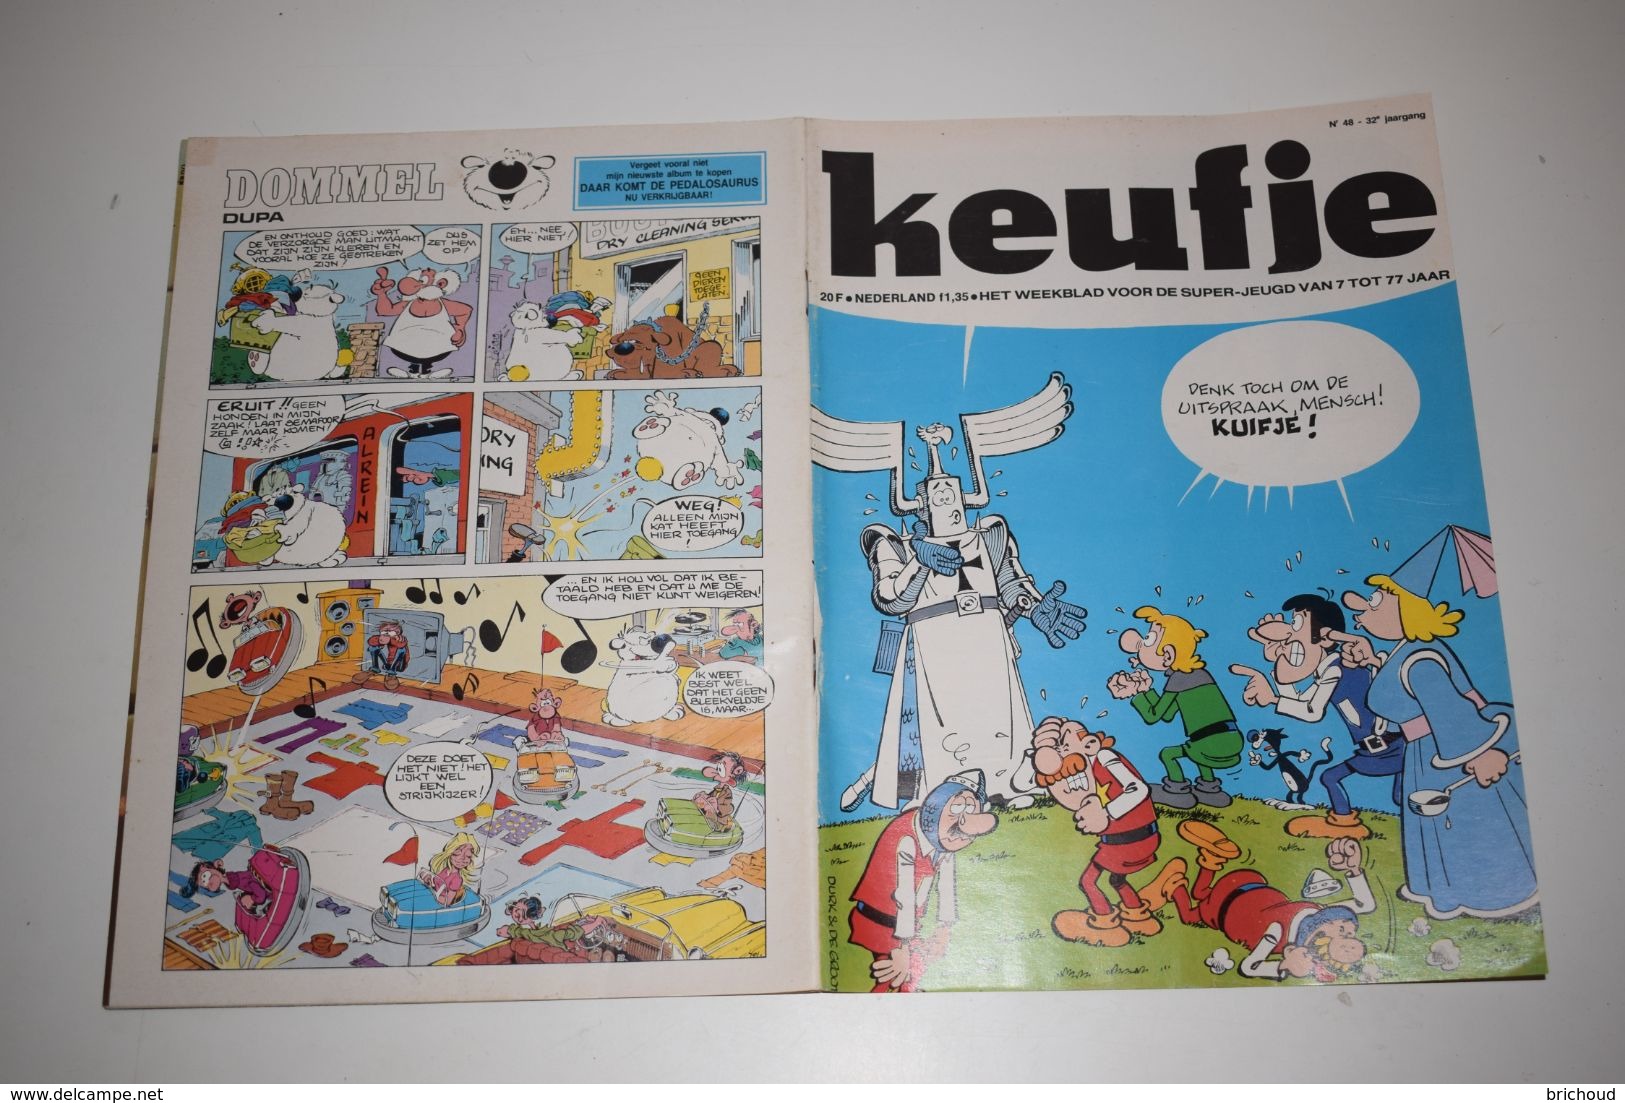 Kuifje Tintin N°48 Nerderlands 29-11-1977 Denk Toch Om De Uitspraak, Mensch! Kuifje - Kuifje